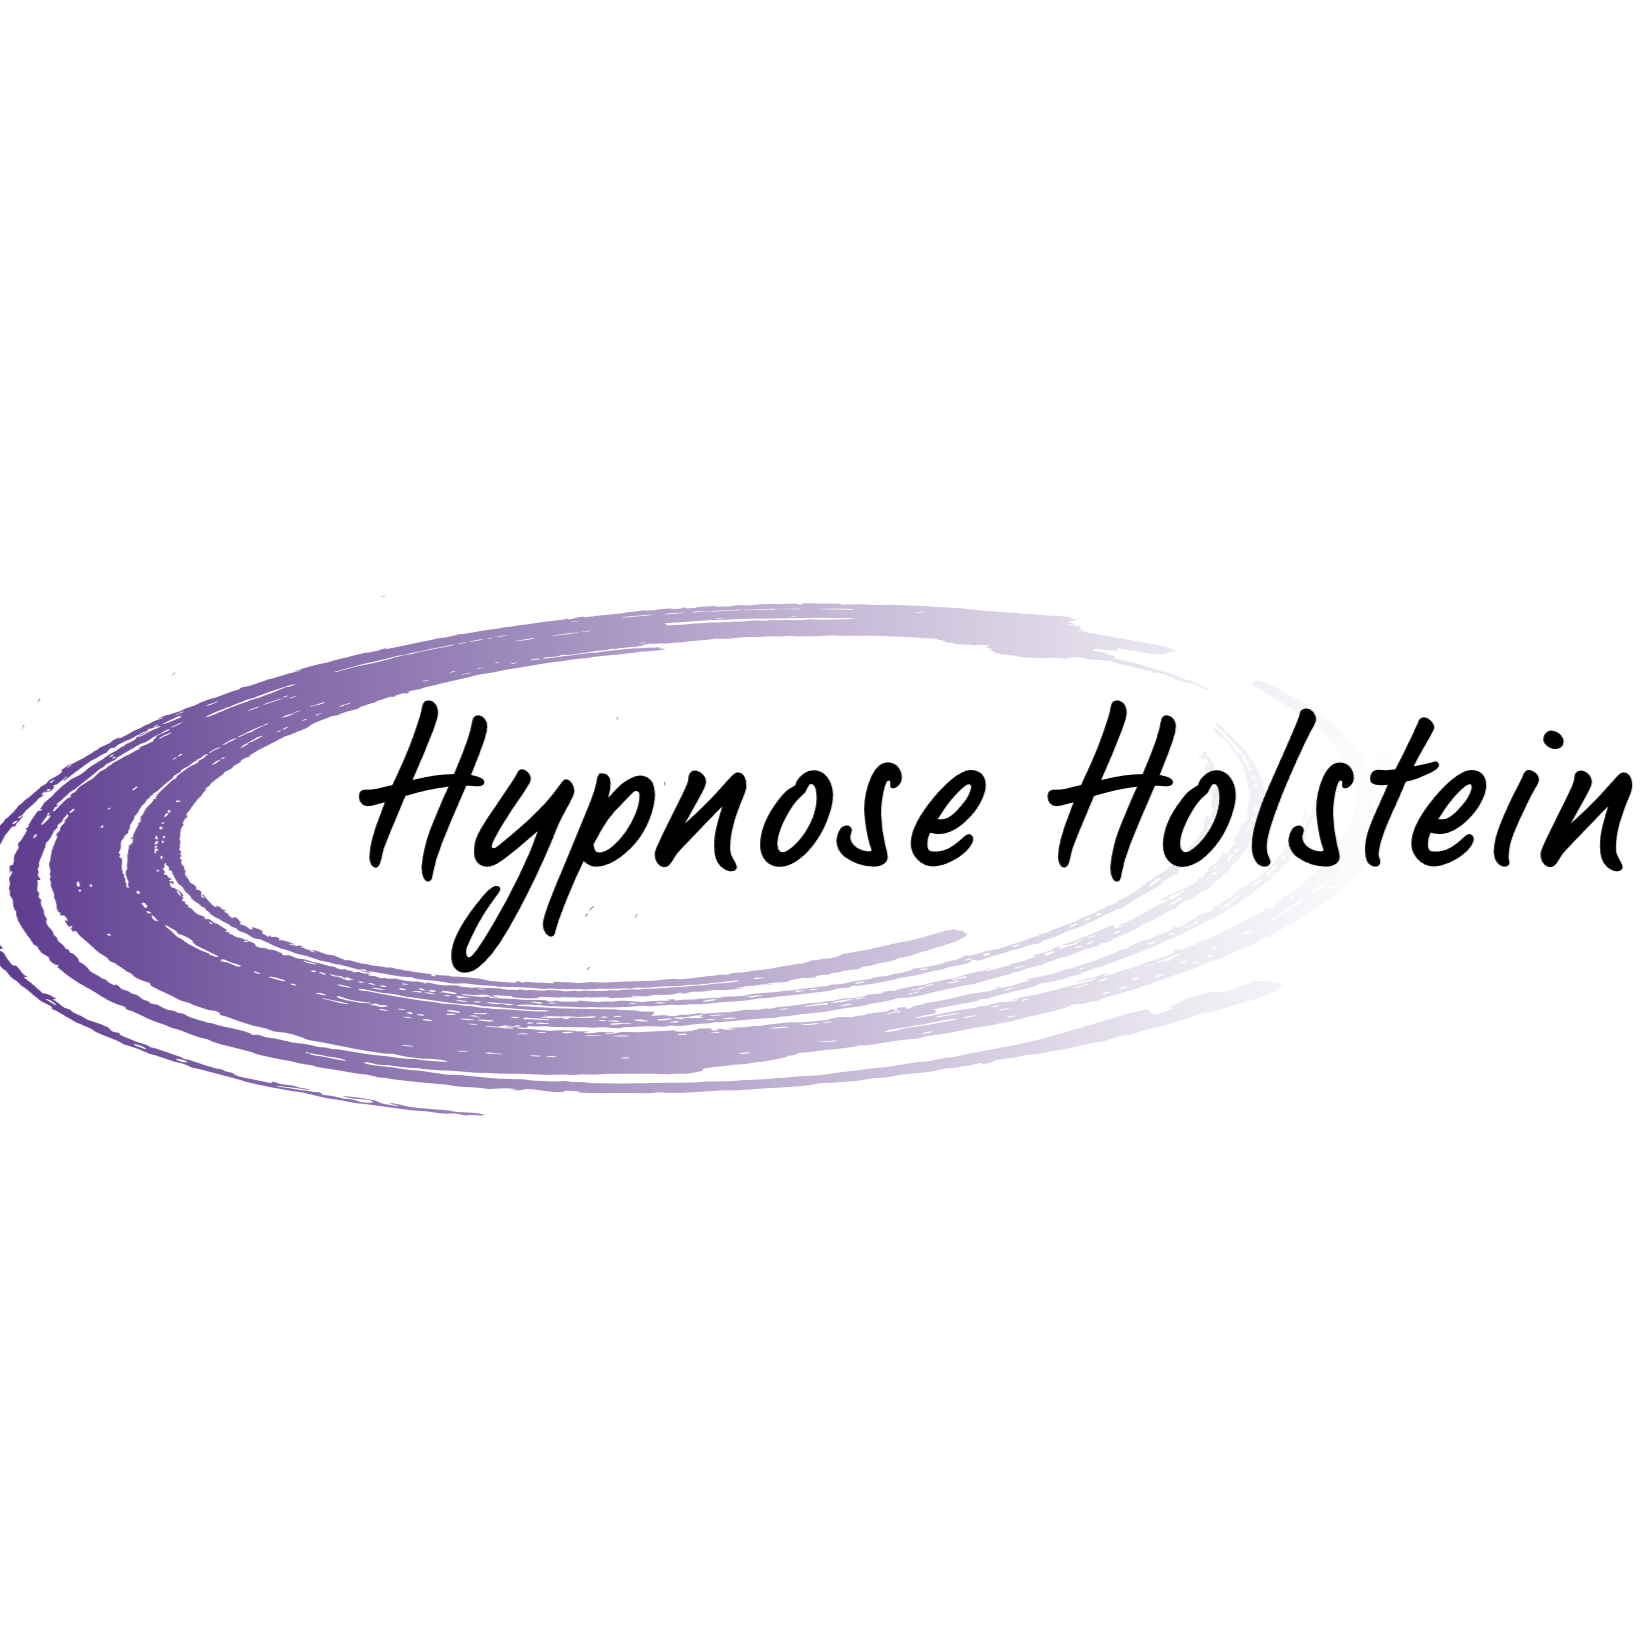 Hypnose Holstein, Ralf Heeschen in Borgdorf Seedorf - Logo